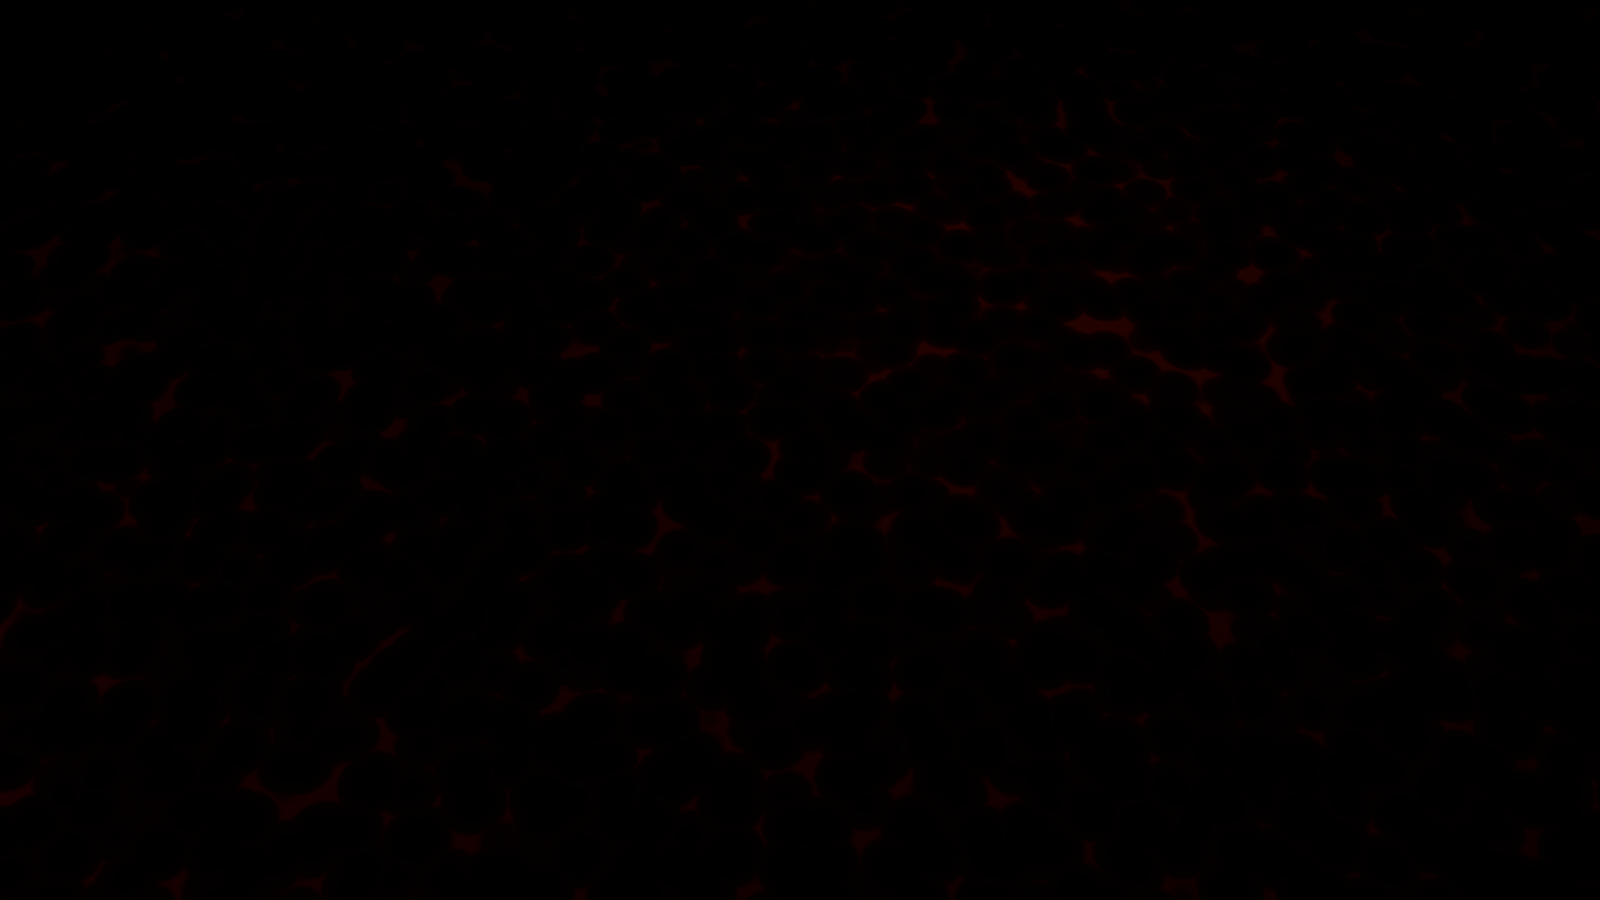 Dark Wallpapers 1080p - Wallpaper Cave